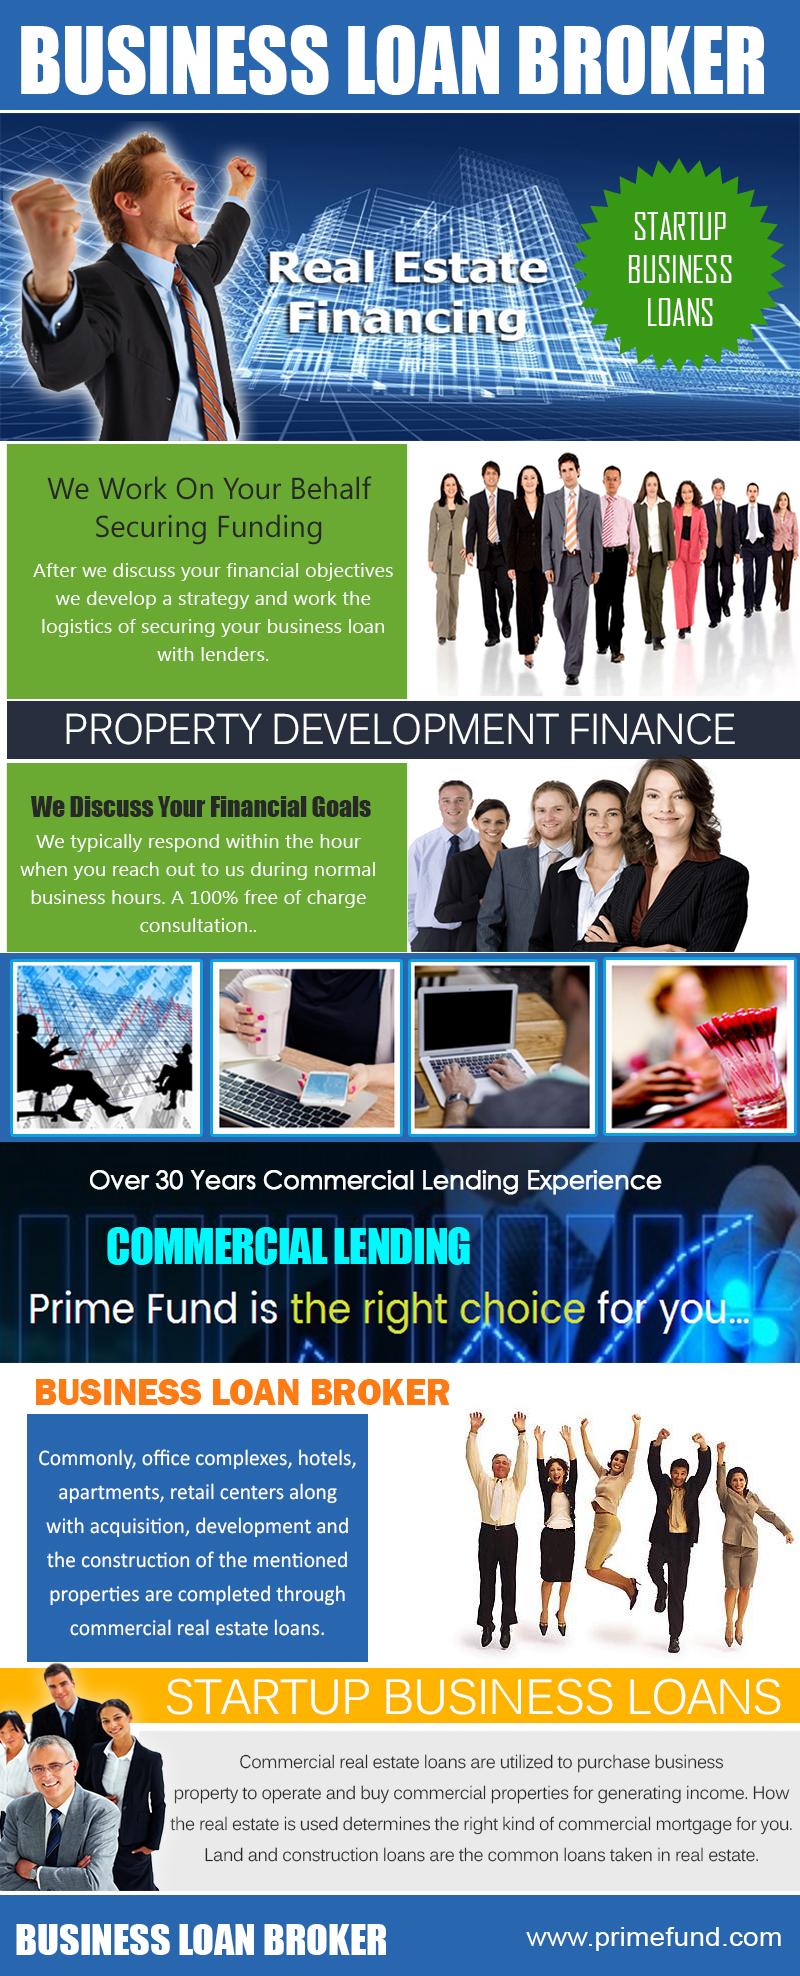 Business Loan Broker